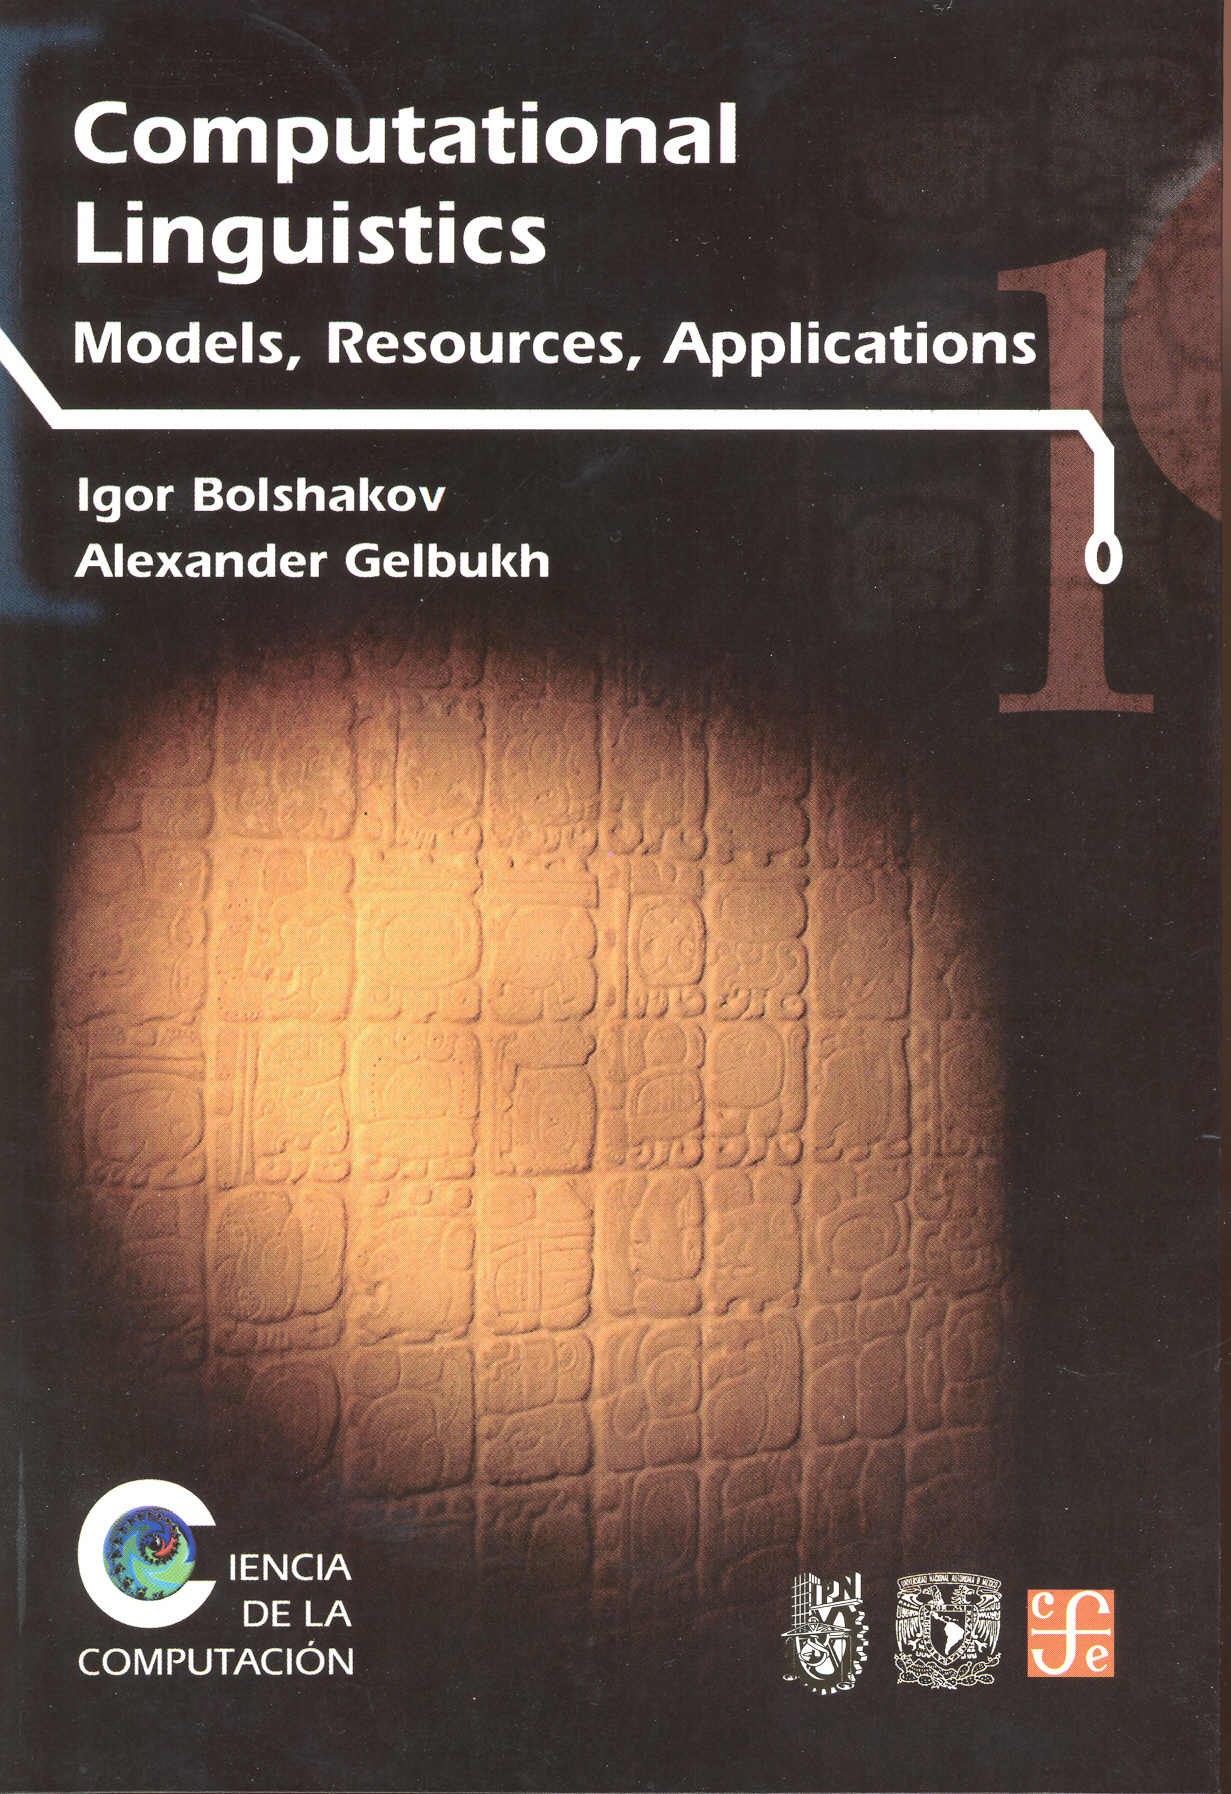 Computational Linguistics: Models, Resources, Applications